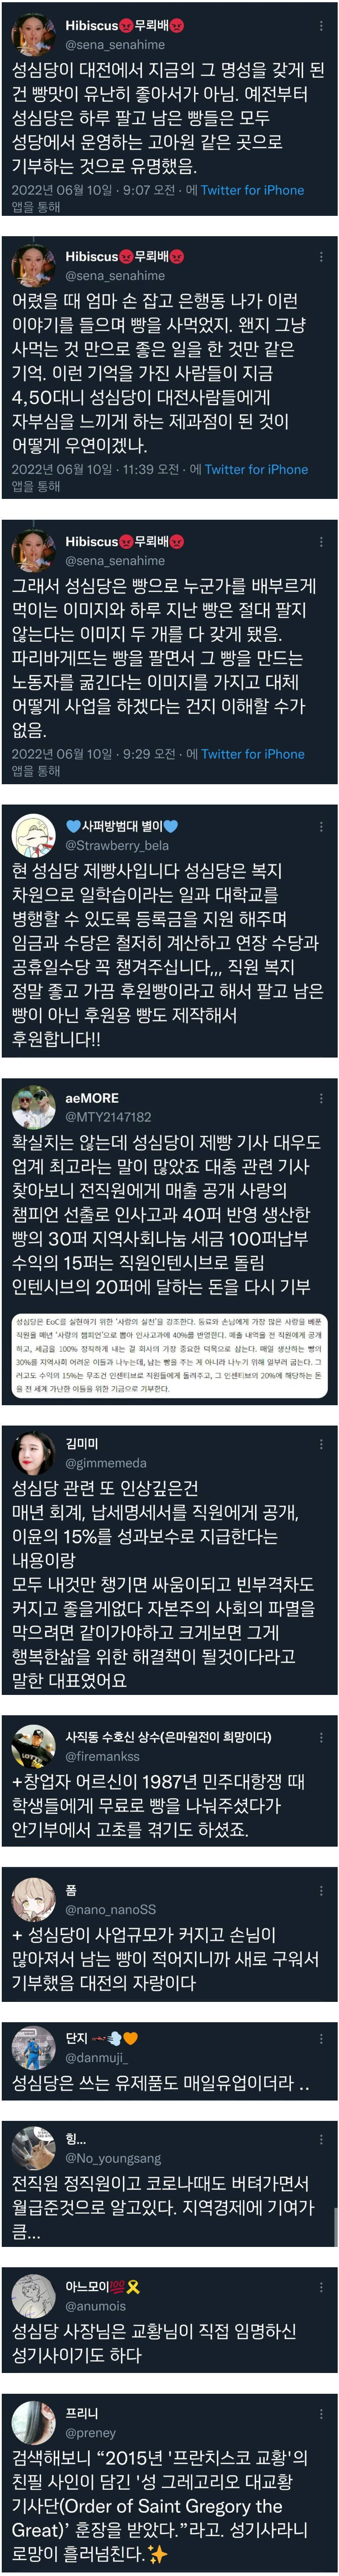 대전 성심당의 진실.png